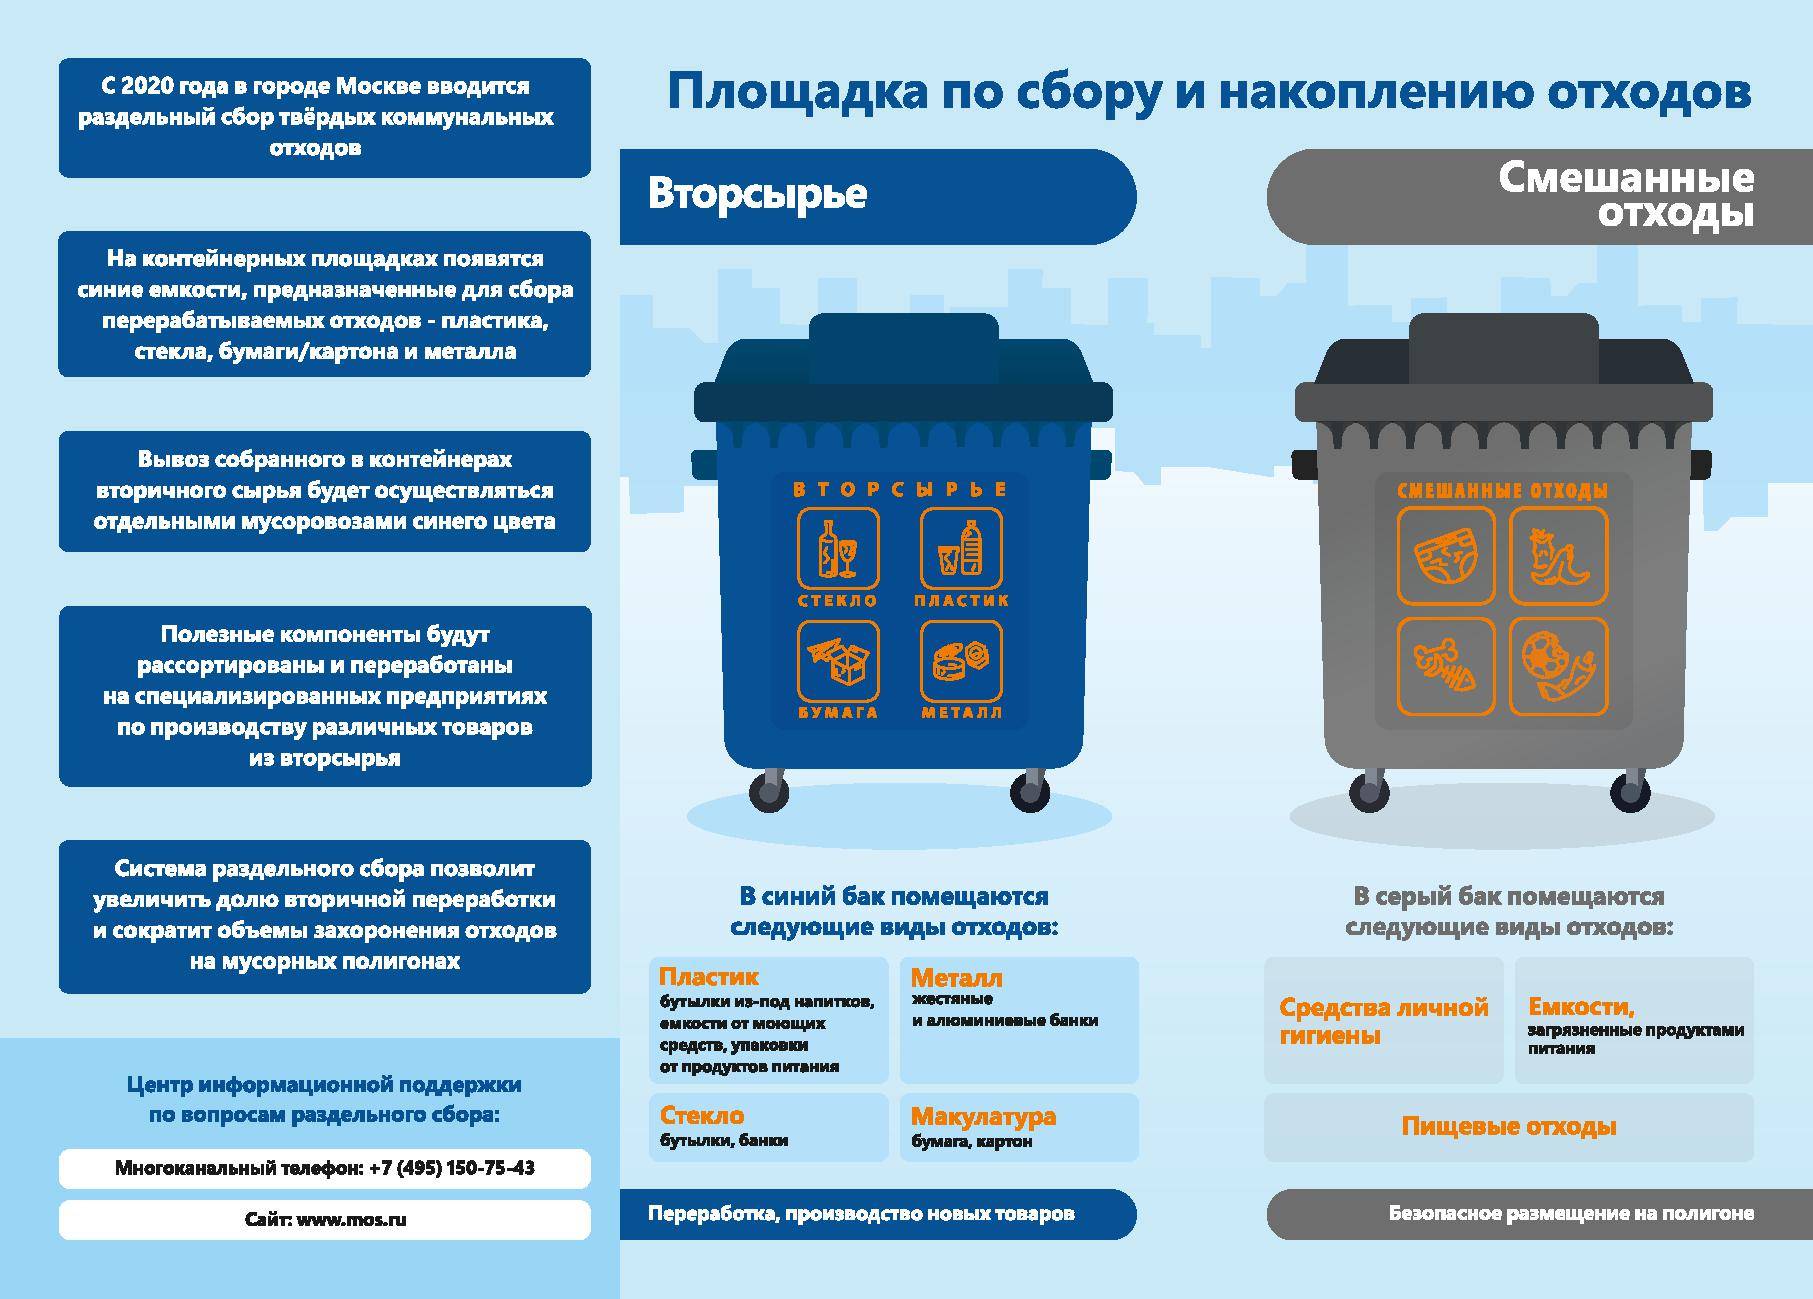 Раздельный сбор мусора: правила сортировки отходов для переработки, как организовать систему разделения, что и куда выбрасывать, как начать сортировать?